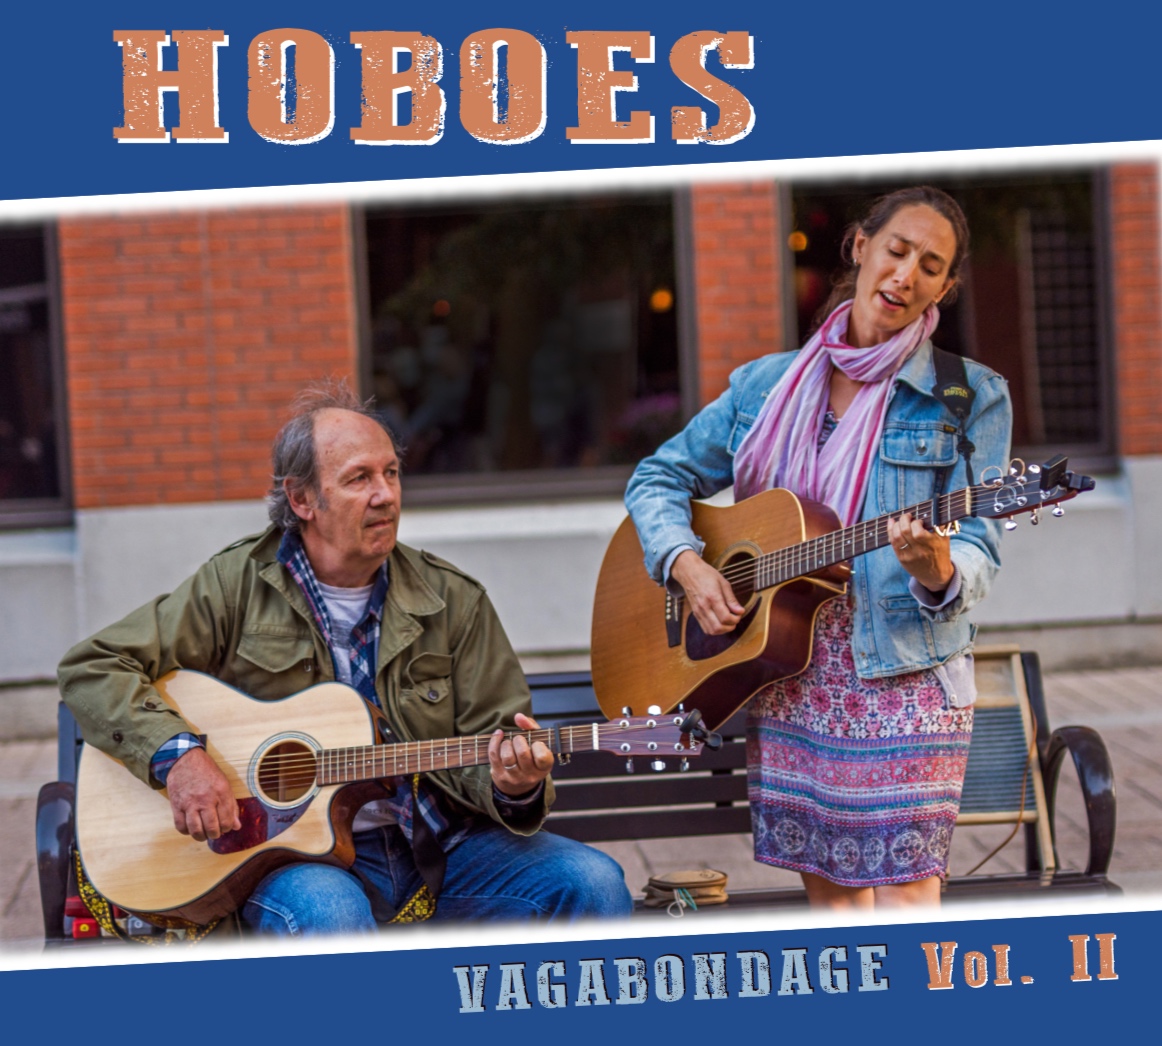 Hoboes, album Vagabondage Vol. II